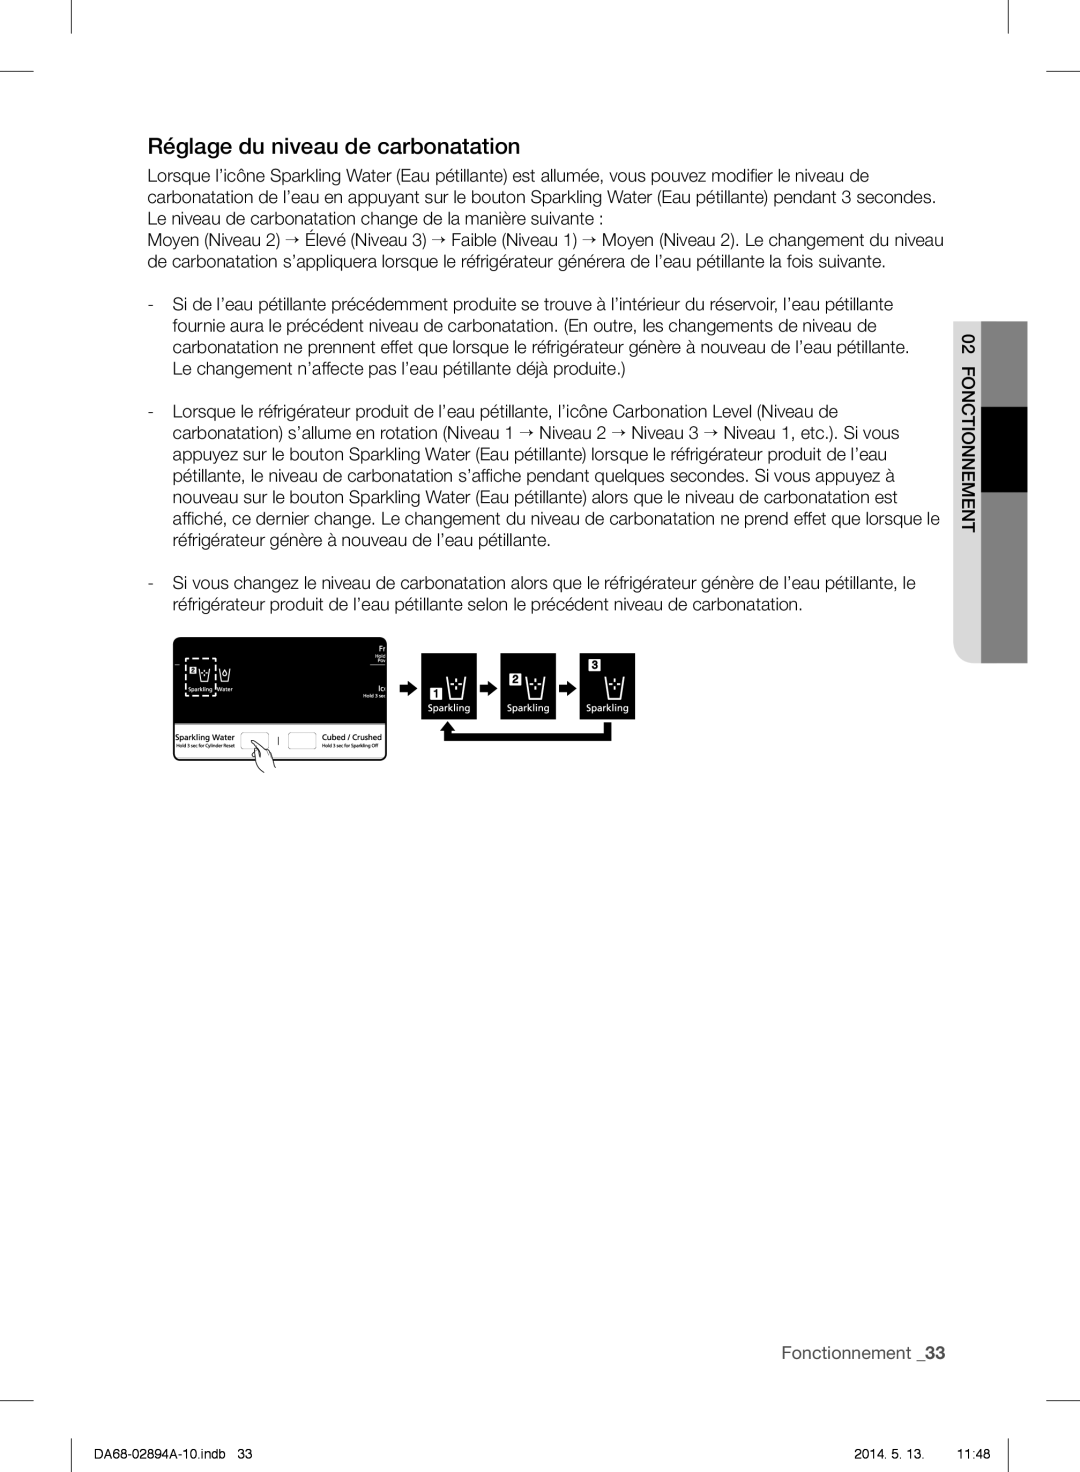 Samsung RF31FMESBSR user manual Réglage du niveau de carbonatation, Fonctionnement _33 